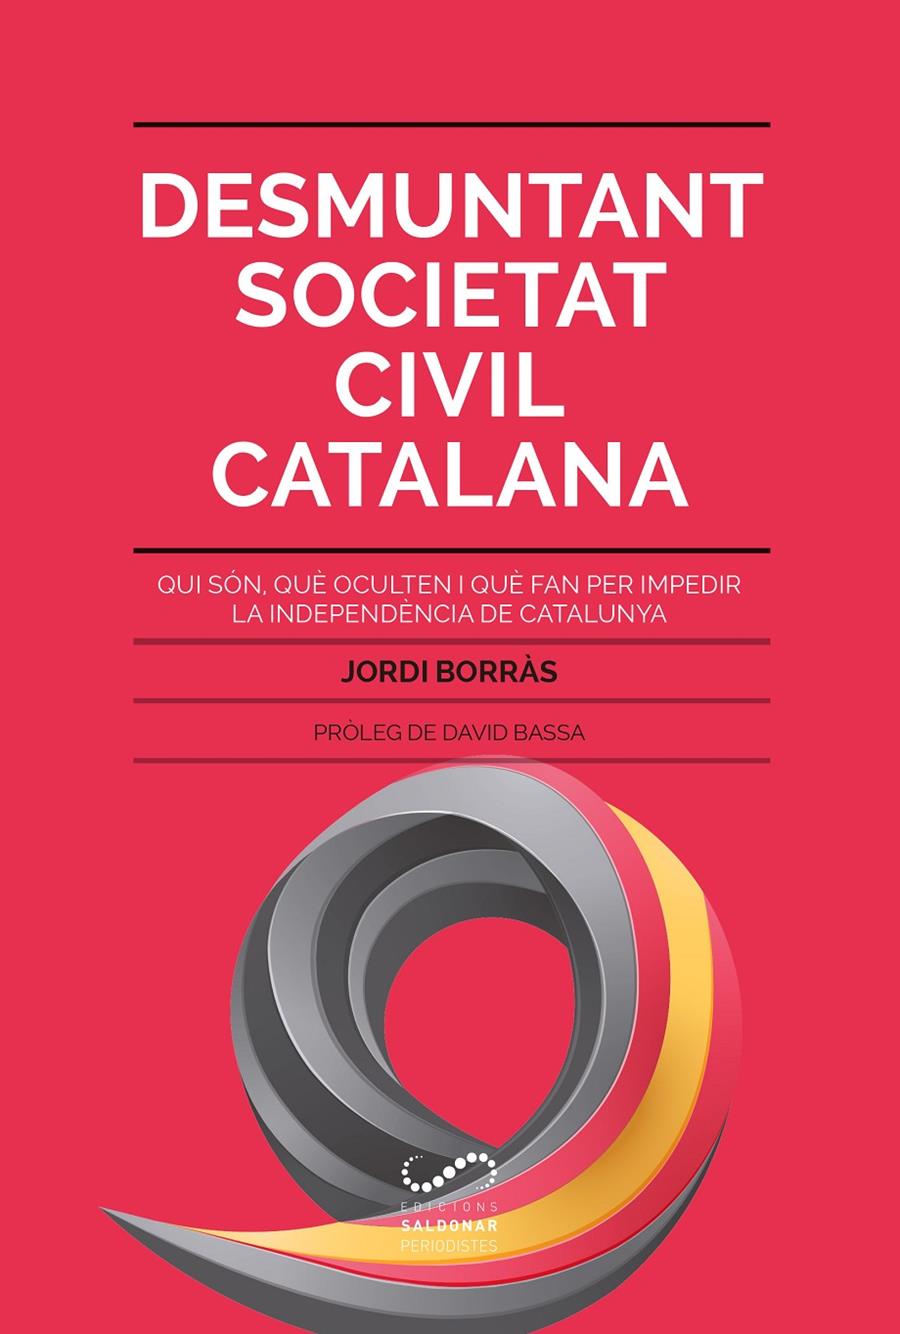 Desmuntant Societat Civil Catalana | Borràs Abelló, Jordi | Cooperativa autogestionària